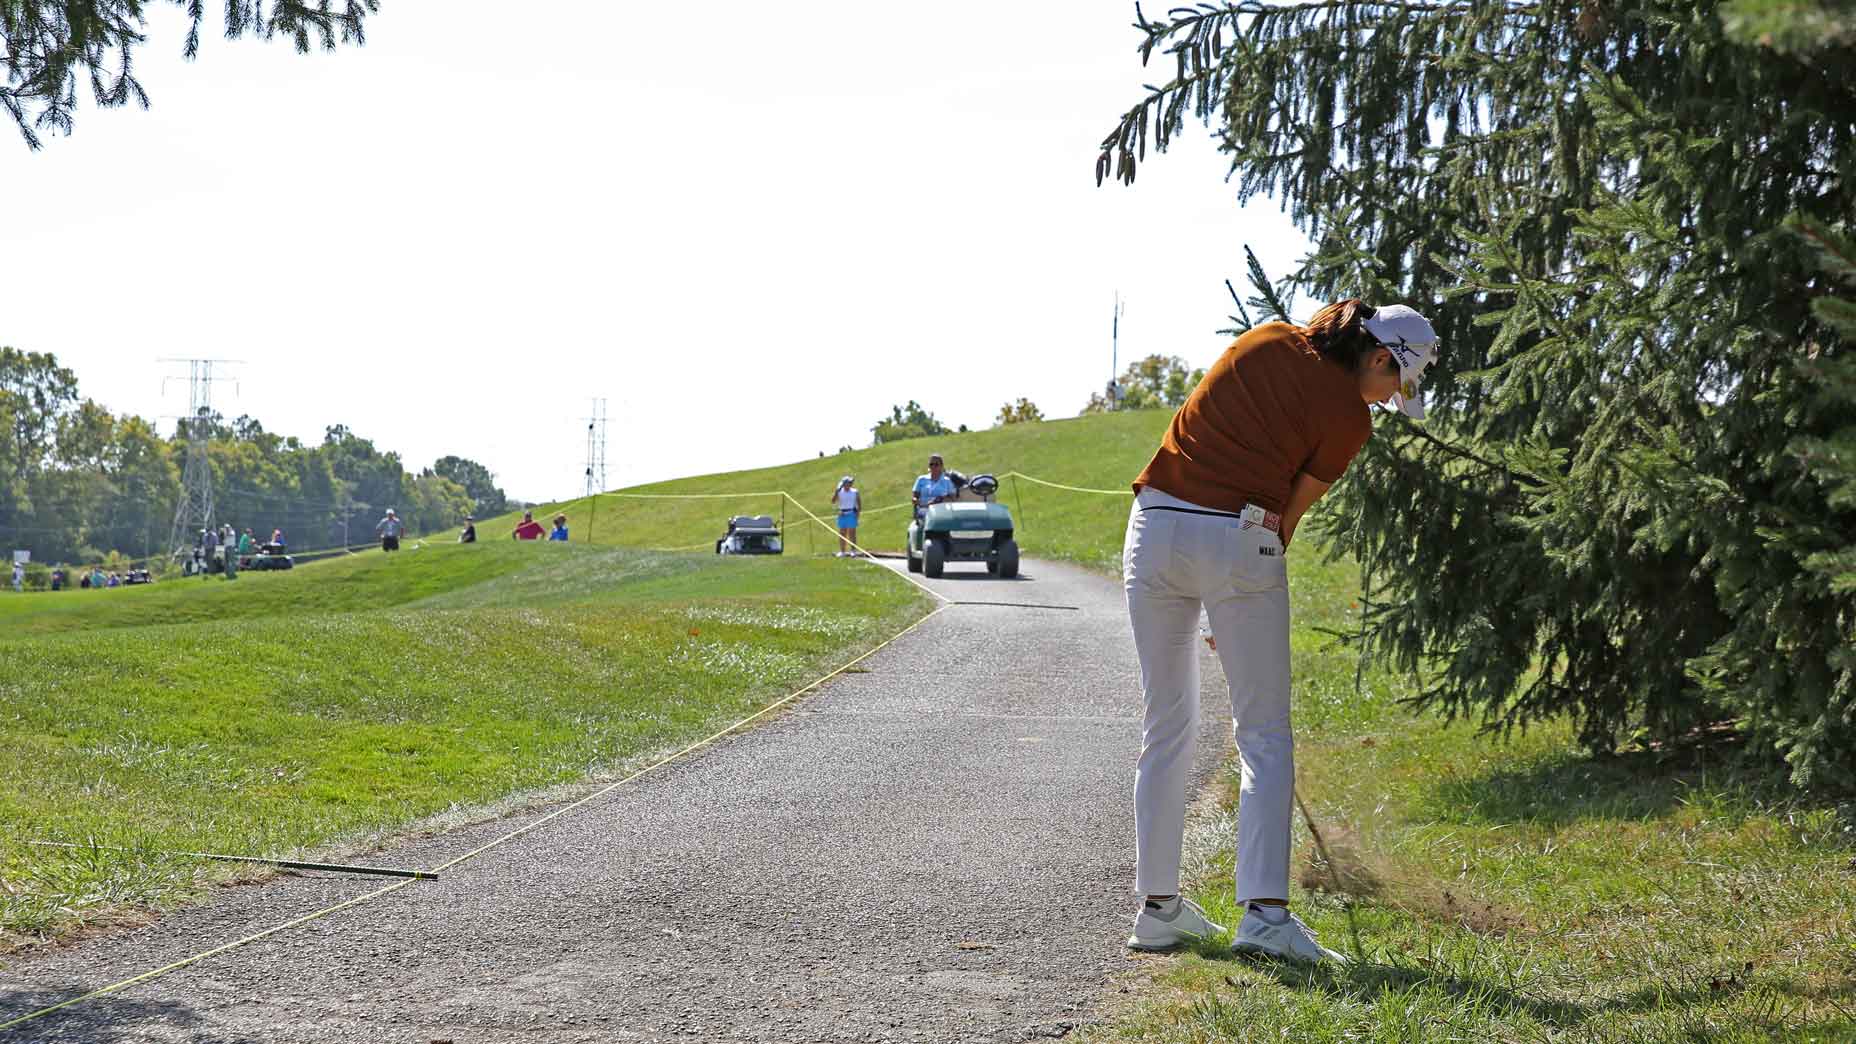 Luật golf: Có được đứng trên đường sau khi thực hiện giải thoát?